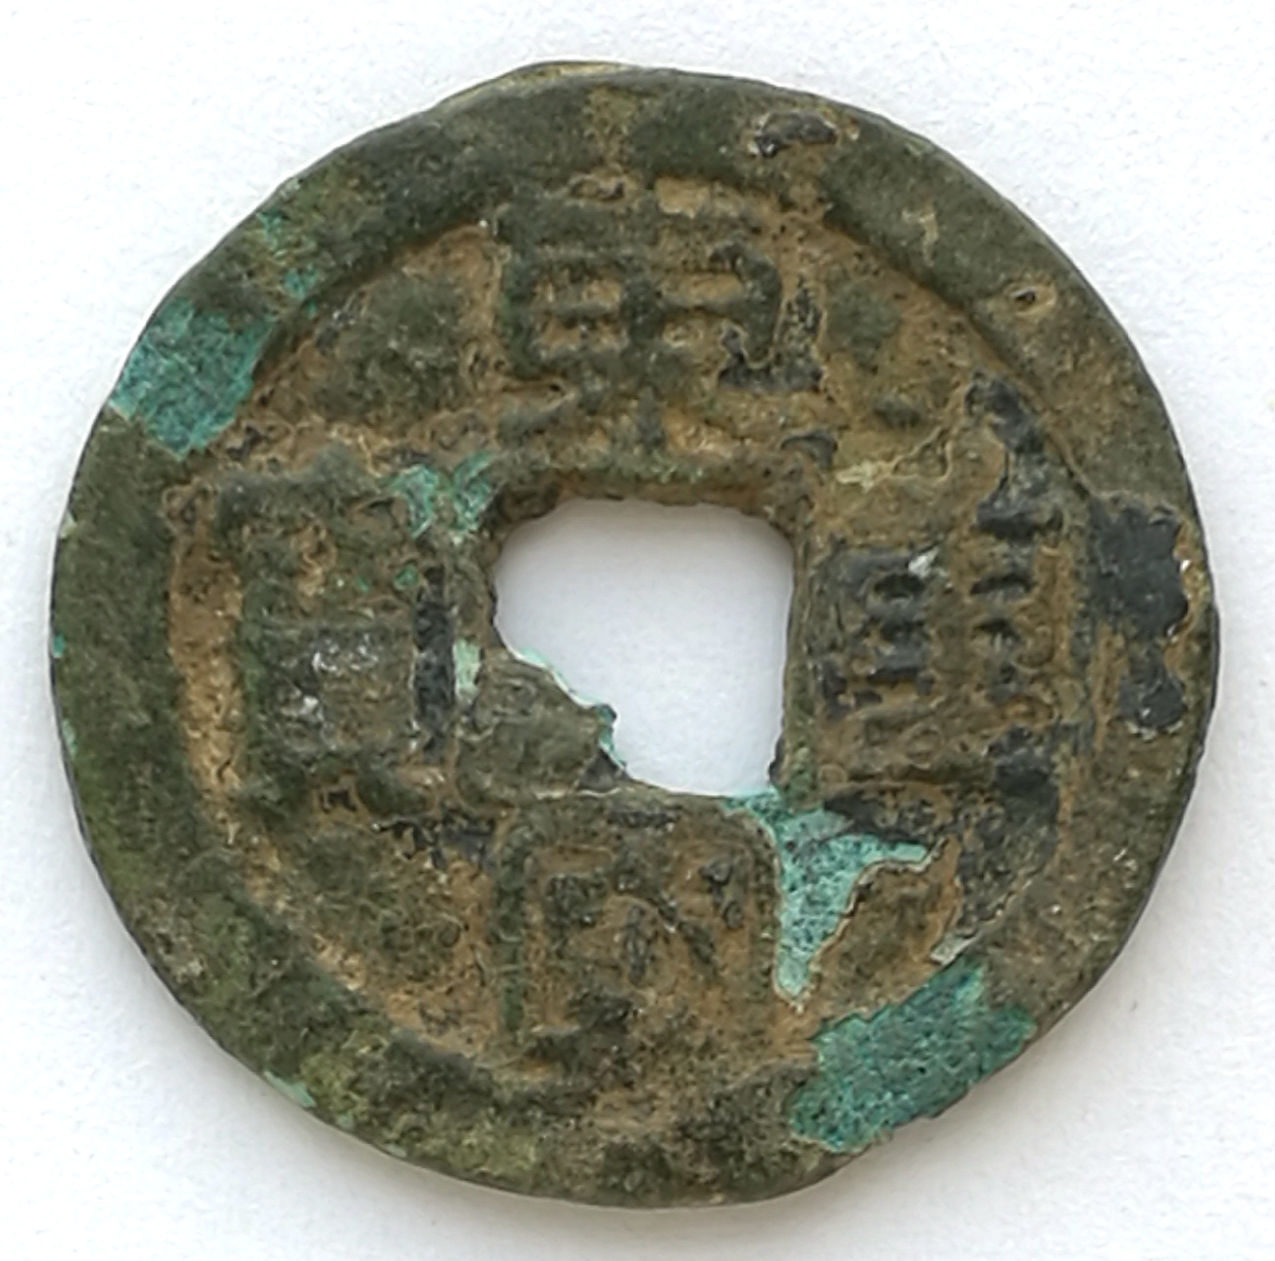 L2101, Korea "Tung-Kuo Chong-Bao" Ancient Coin, Official Script, AD 1095-1104